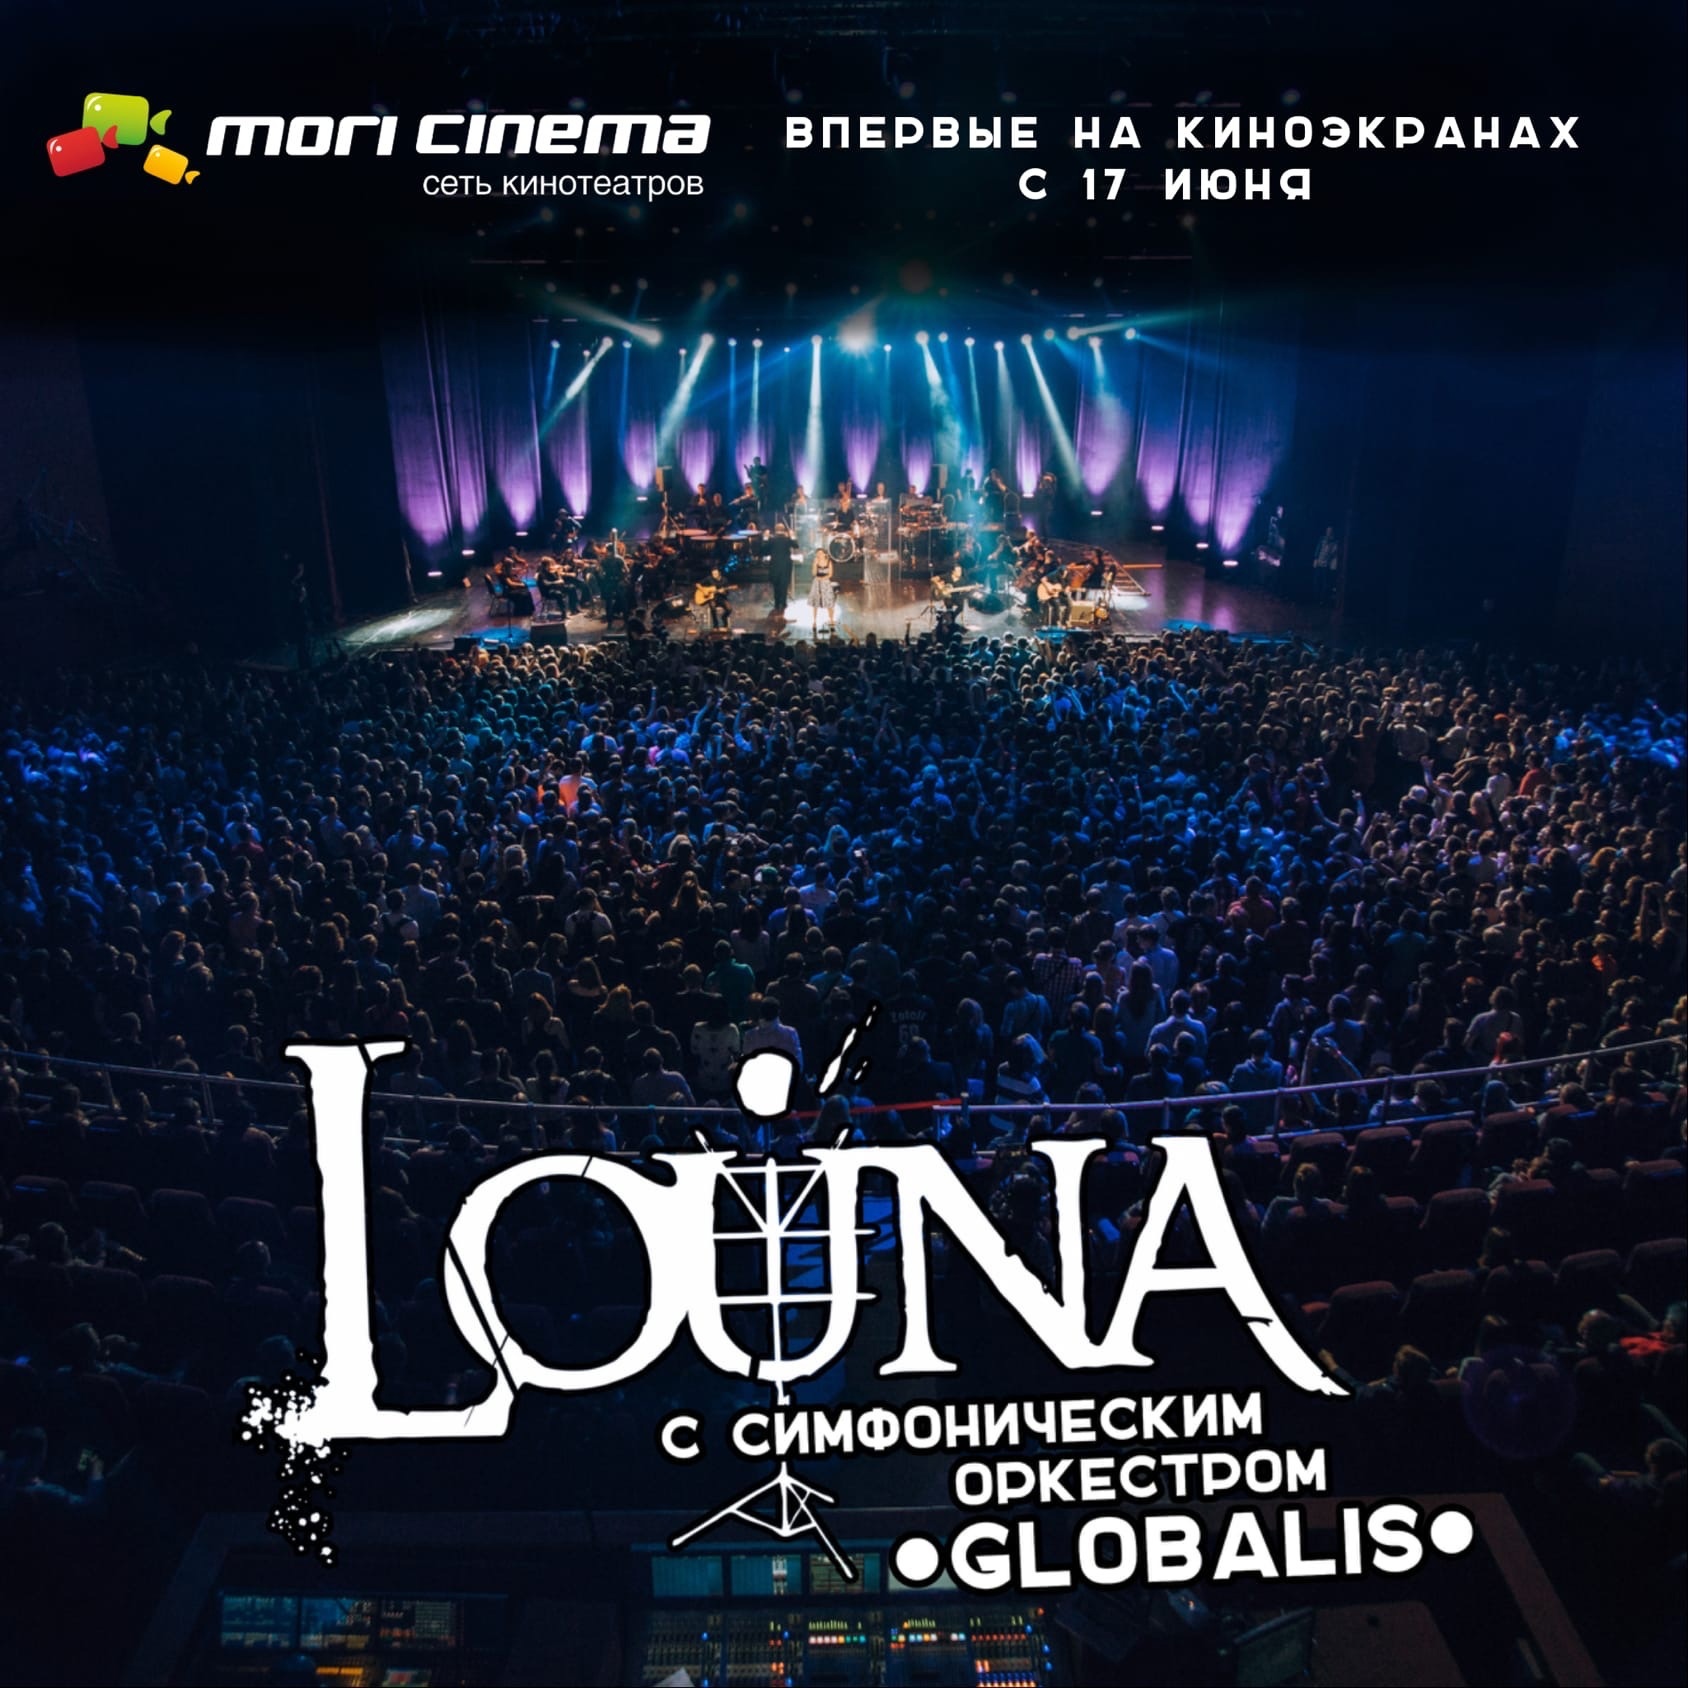 Концерт Louna покажут в кинотеатрах